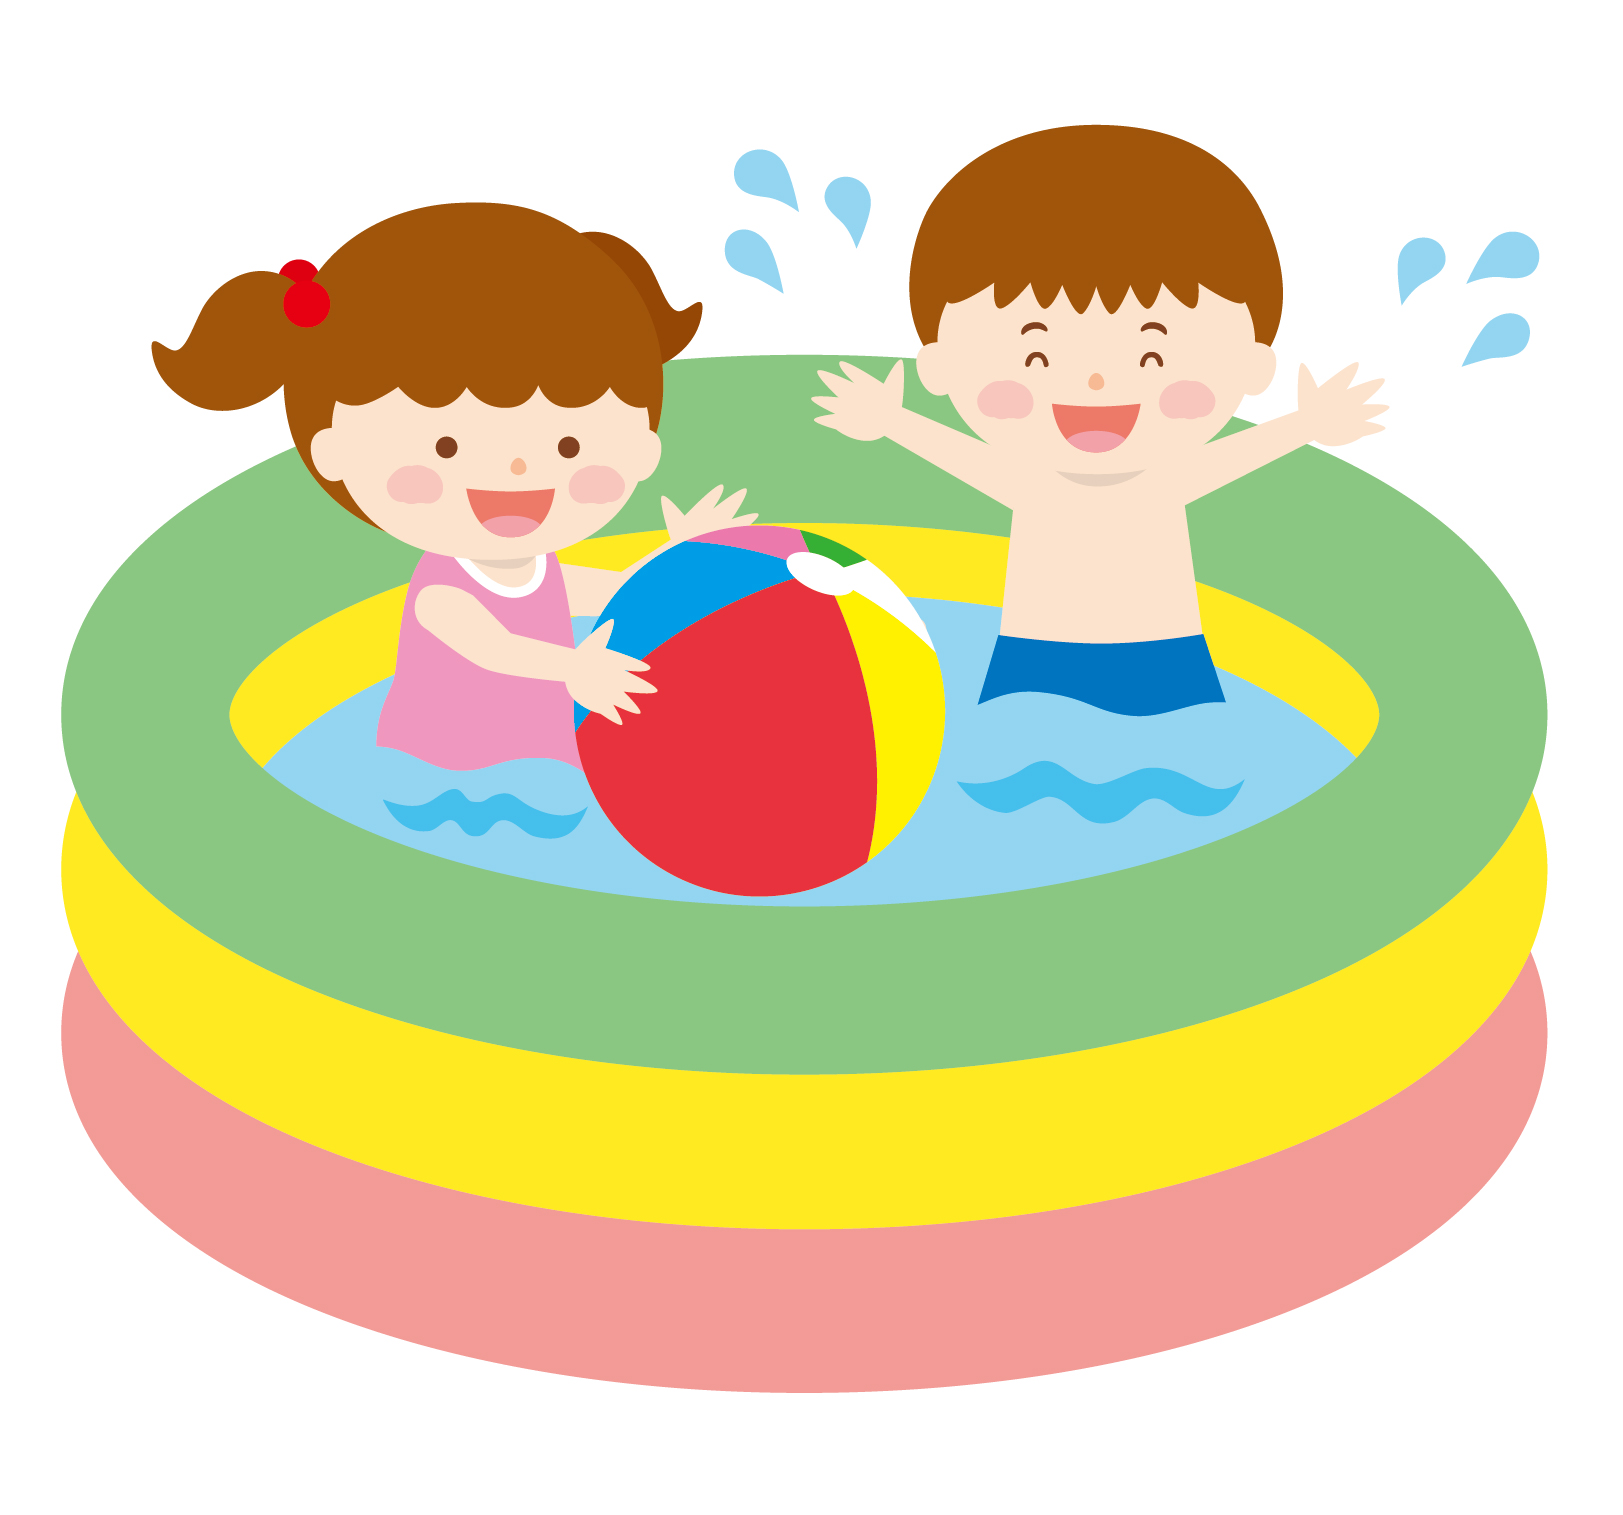 7月15日(土)から草津市立なごみの郷でキッズプールがオープン！10時~16時まで水遊びが楽しめます。